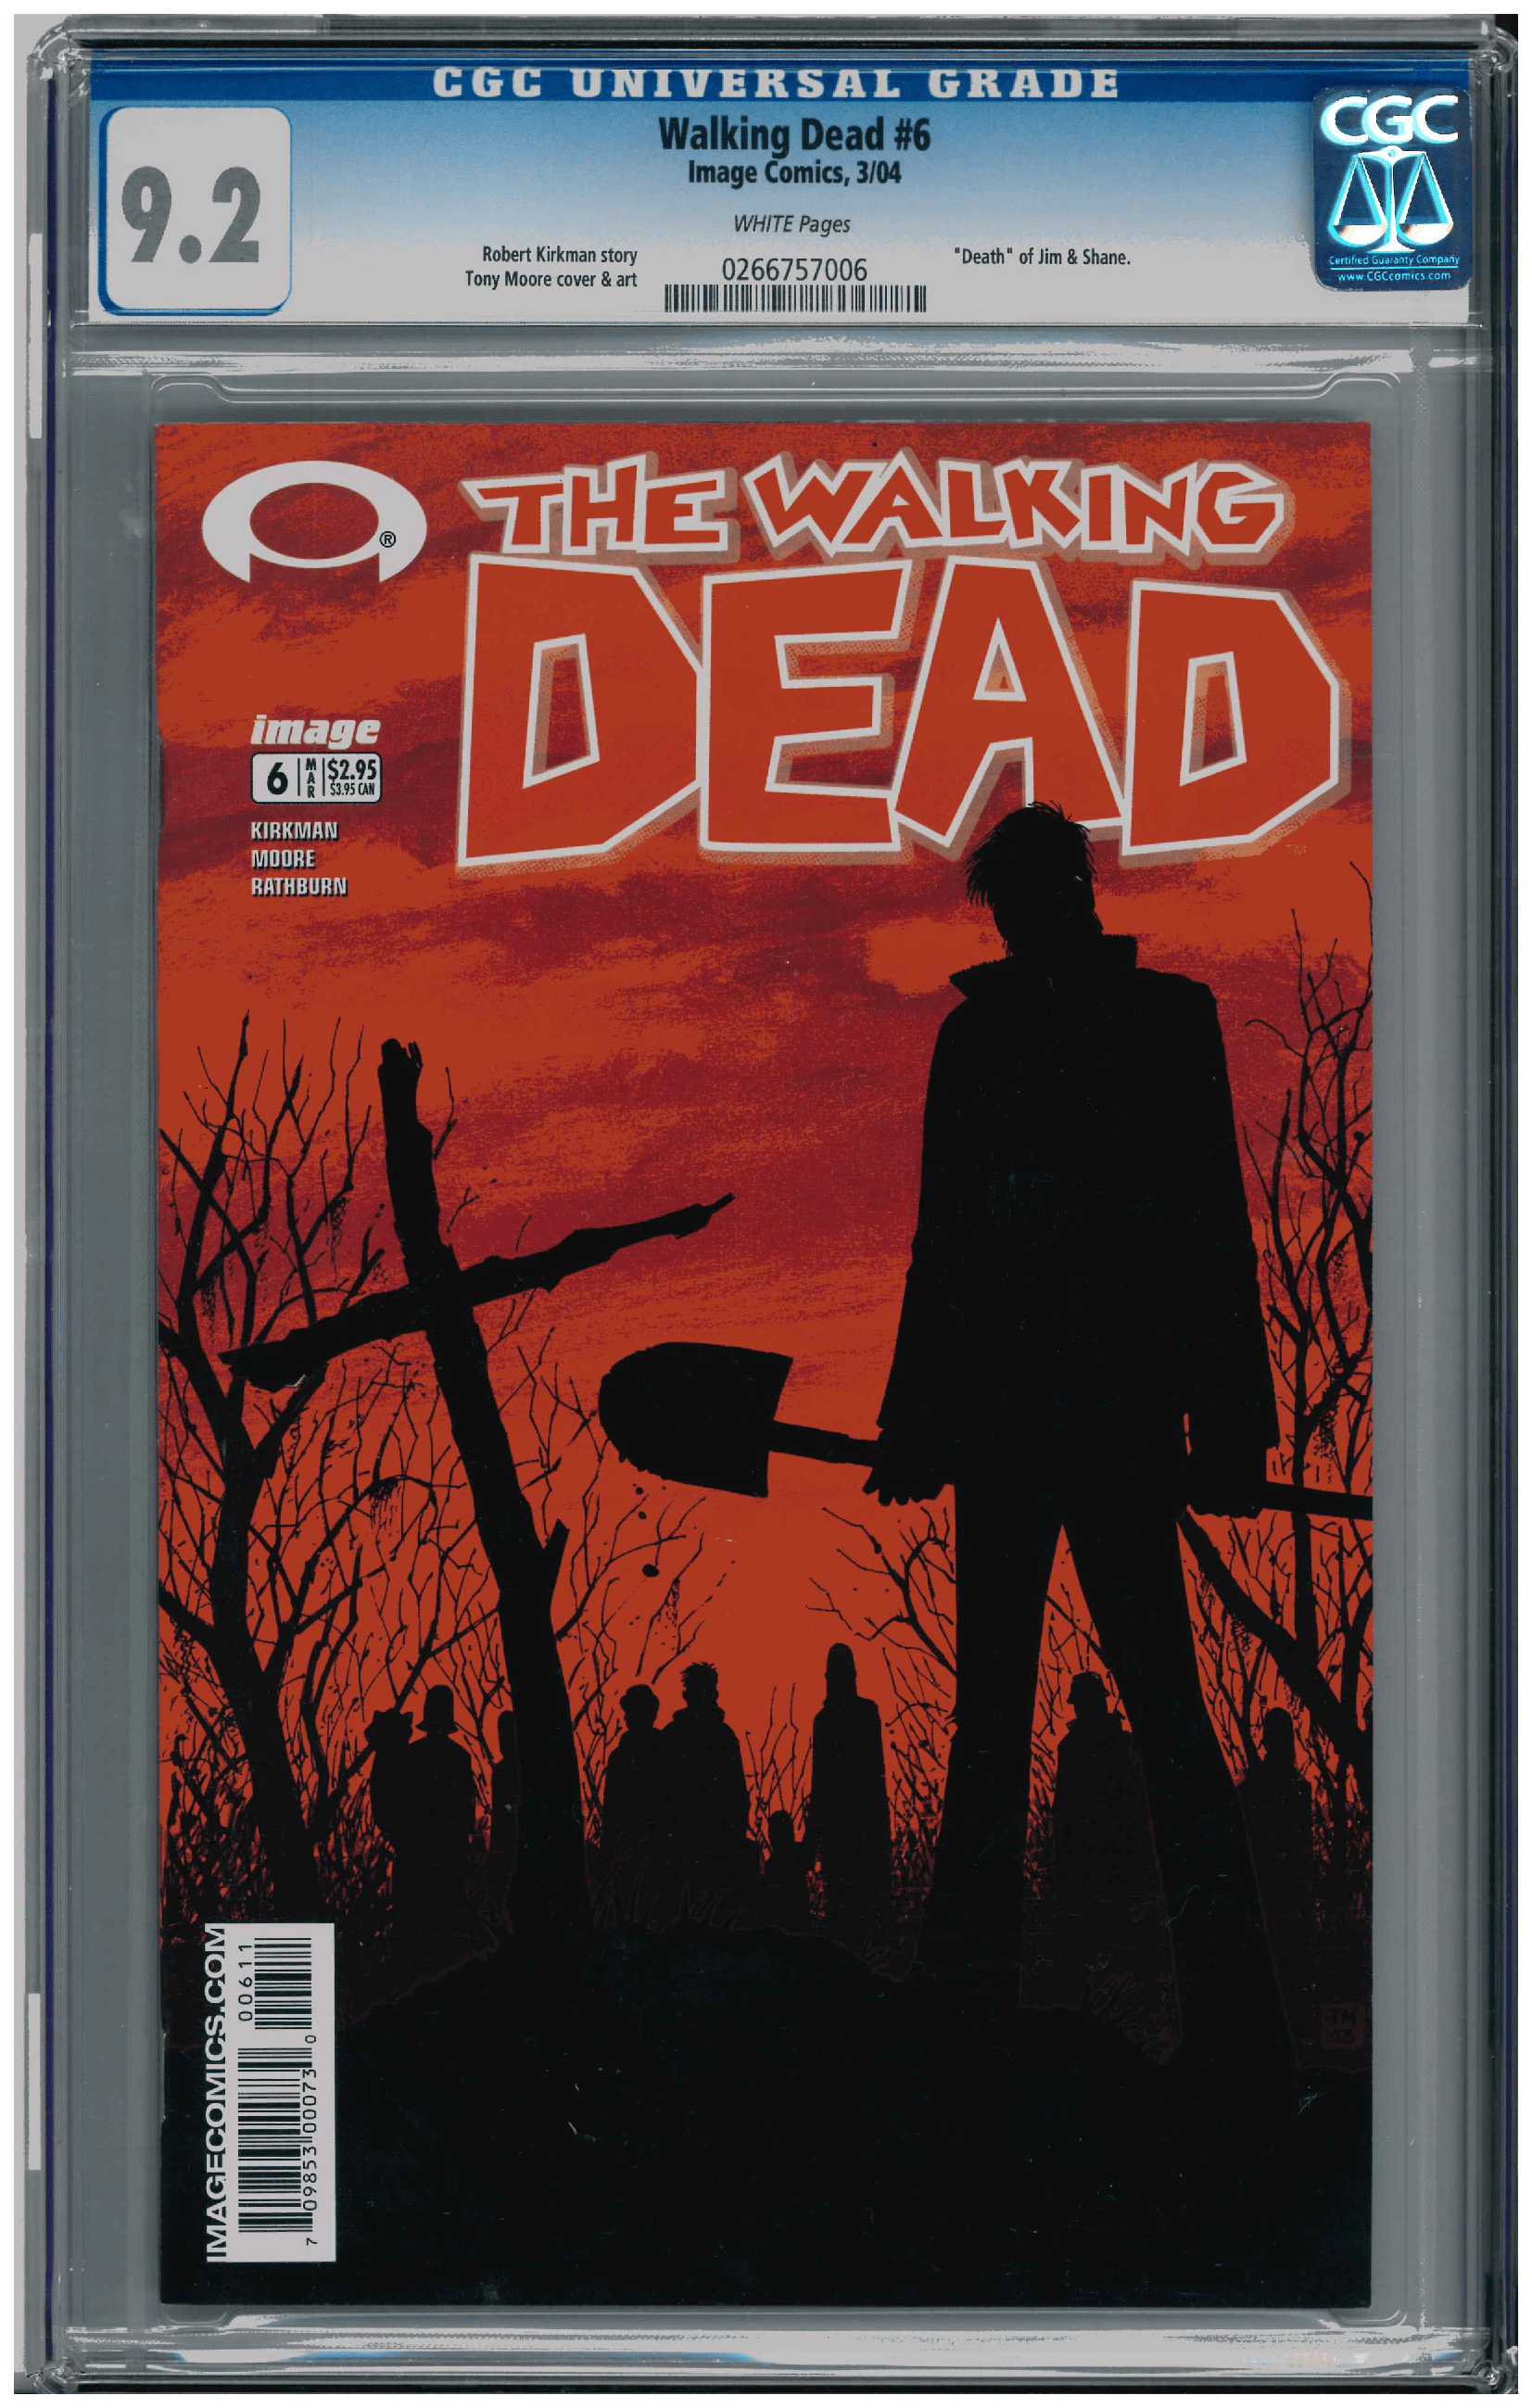 Walking Dead #6